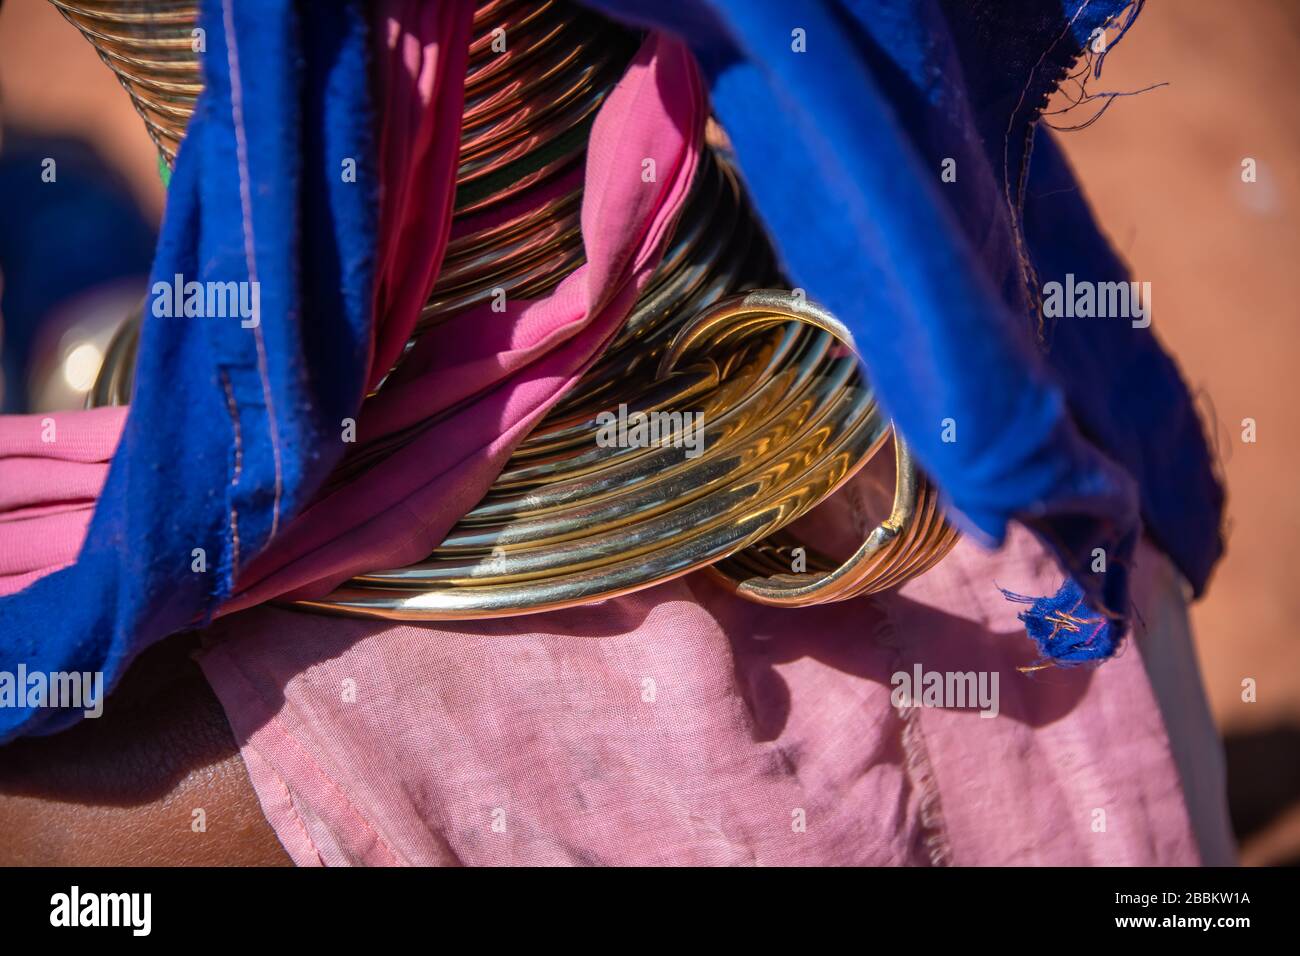 Pan PET, Kayah State : gros plan sur les anneaux de cou traditionnels en laiton portés par une femme de Kayan longneck de la tribu Padaung dans le nord du Myanmar Banque D'Images